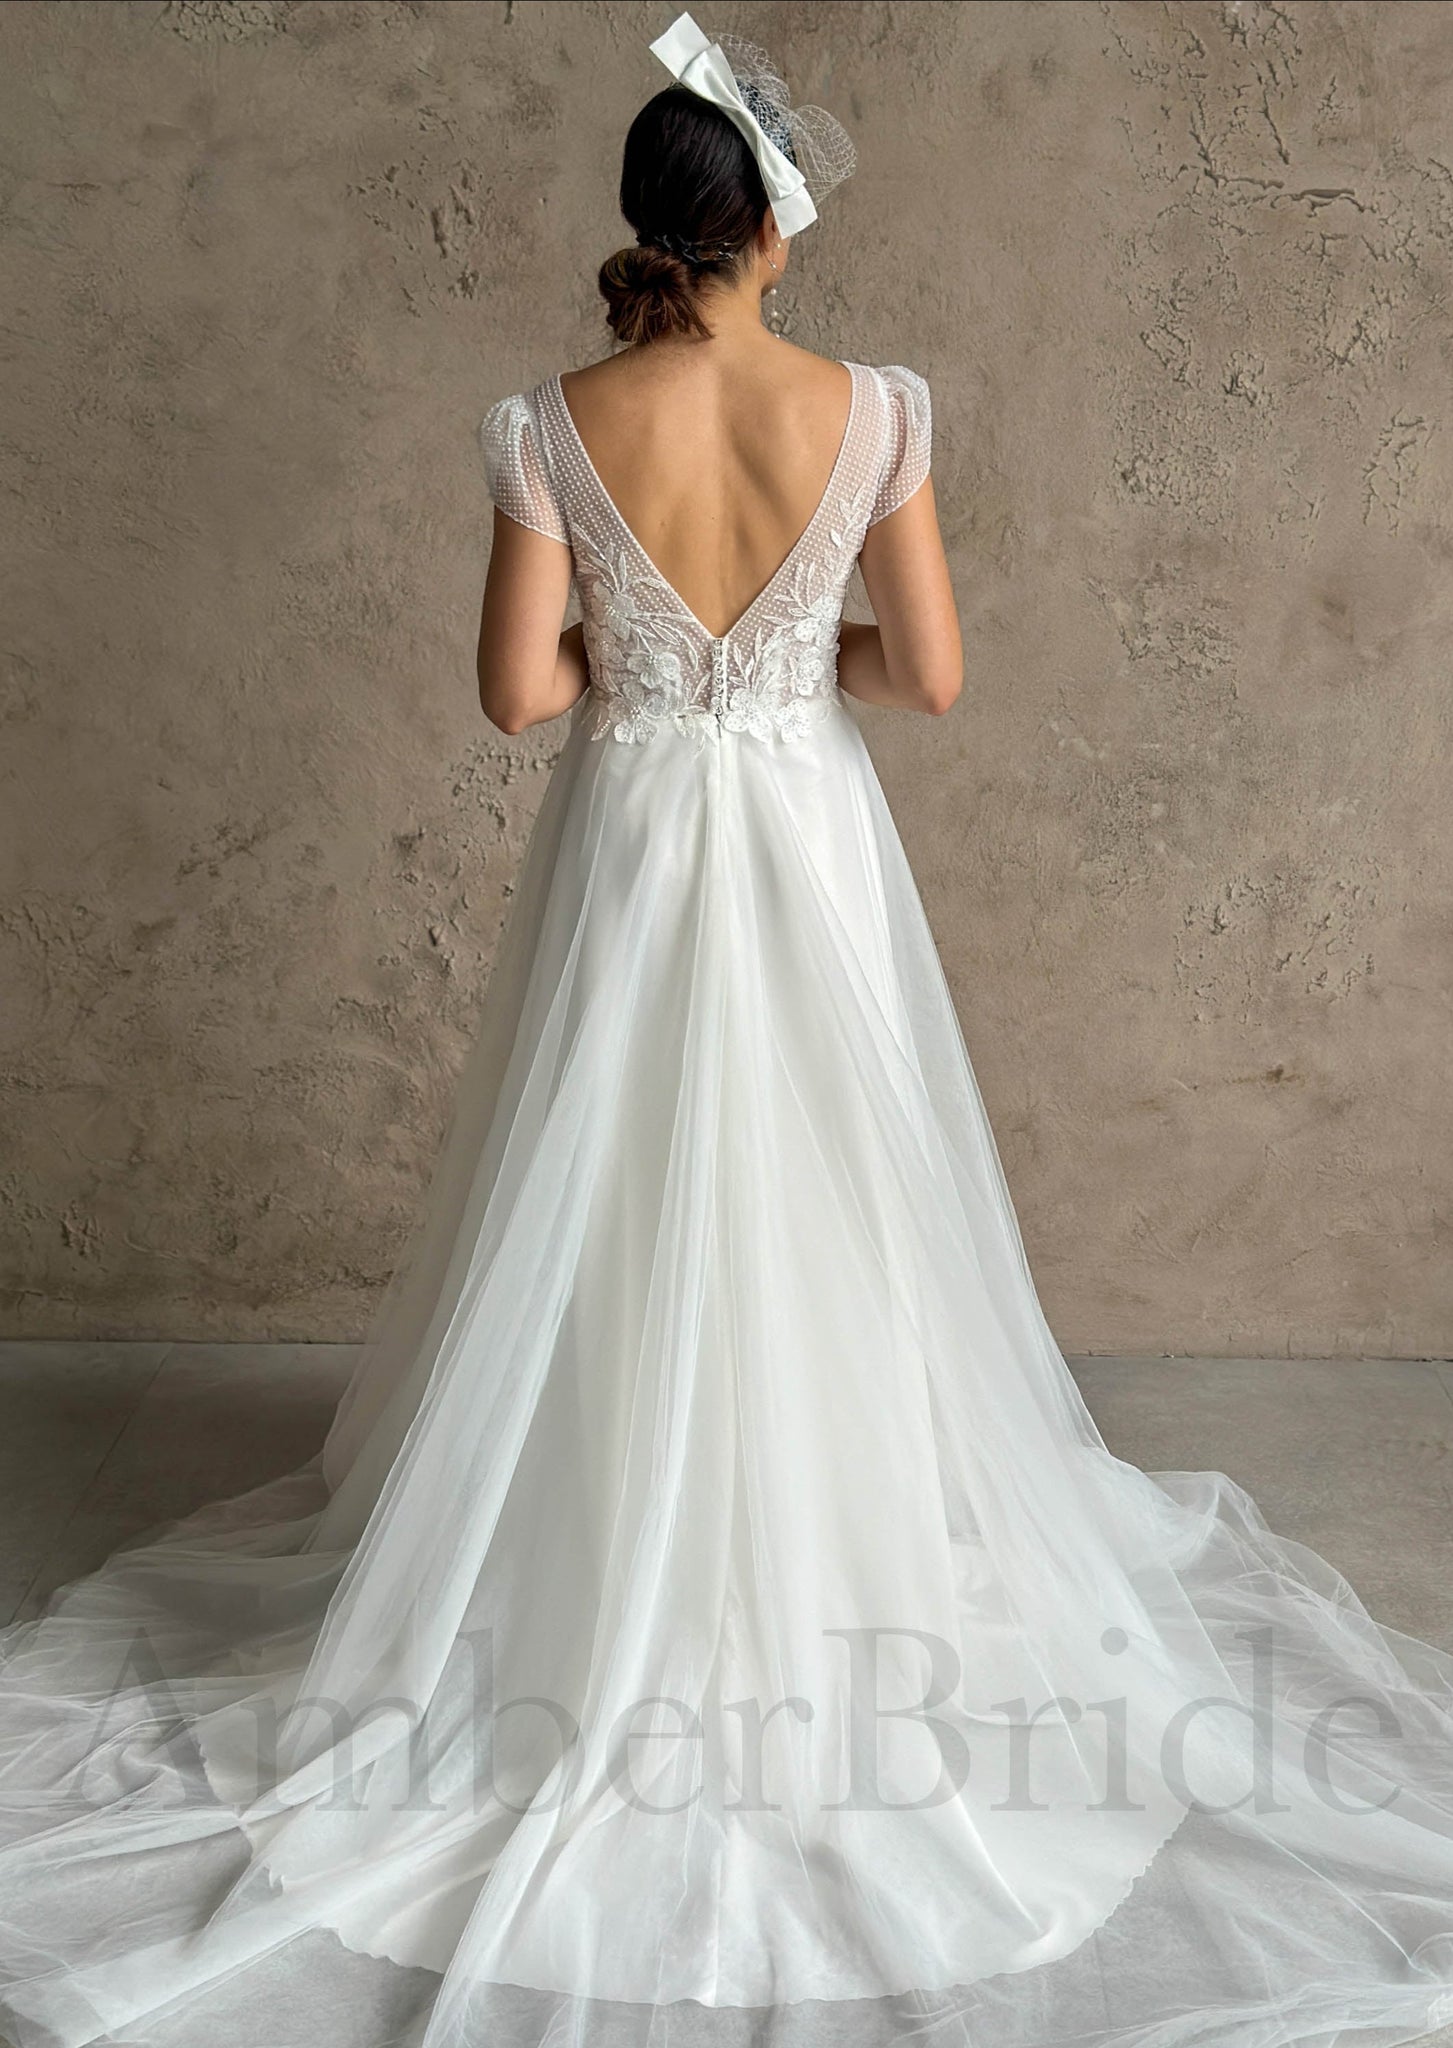 Boho A-Line Tulle Wedding Dress with V-Neck and Floral-Polka Dot Design